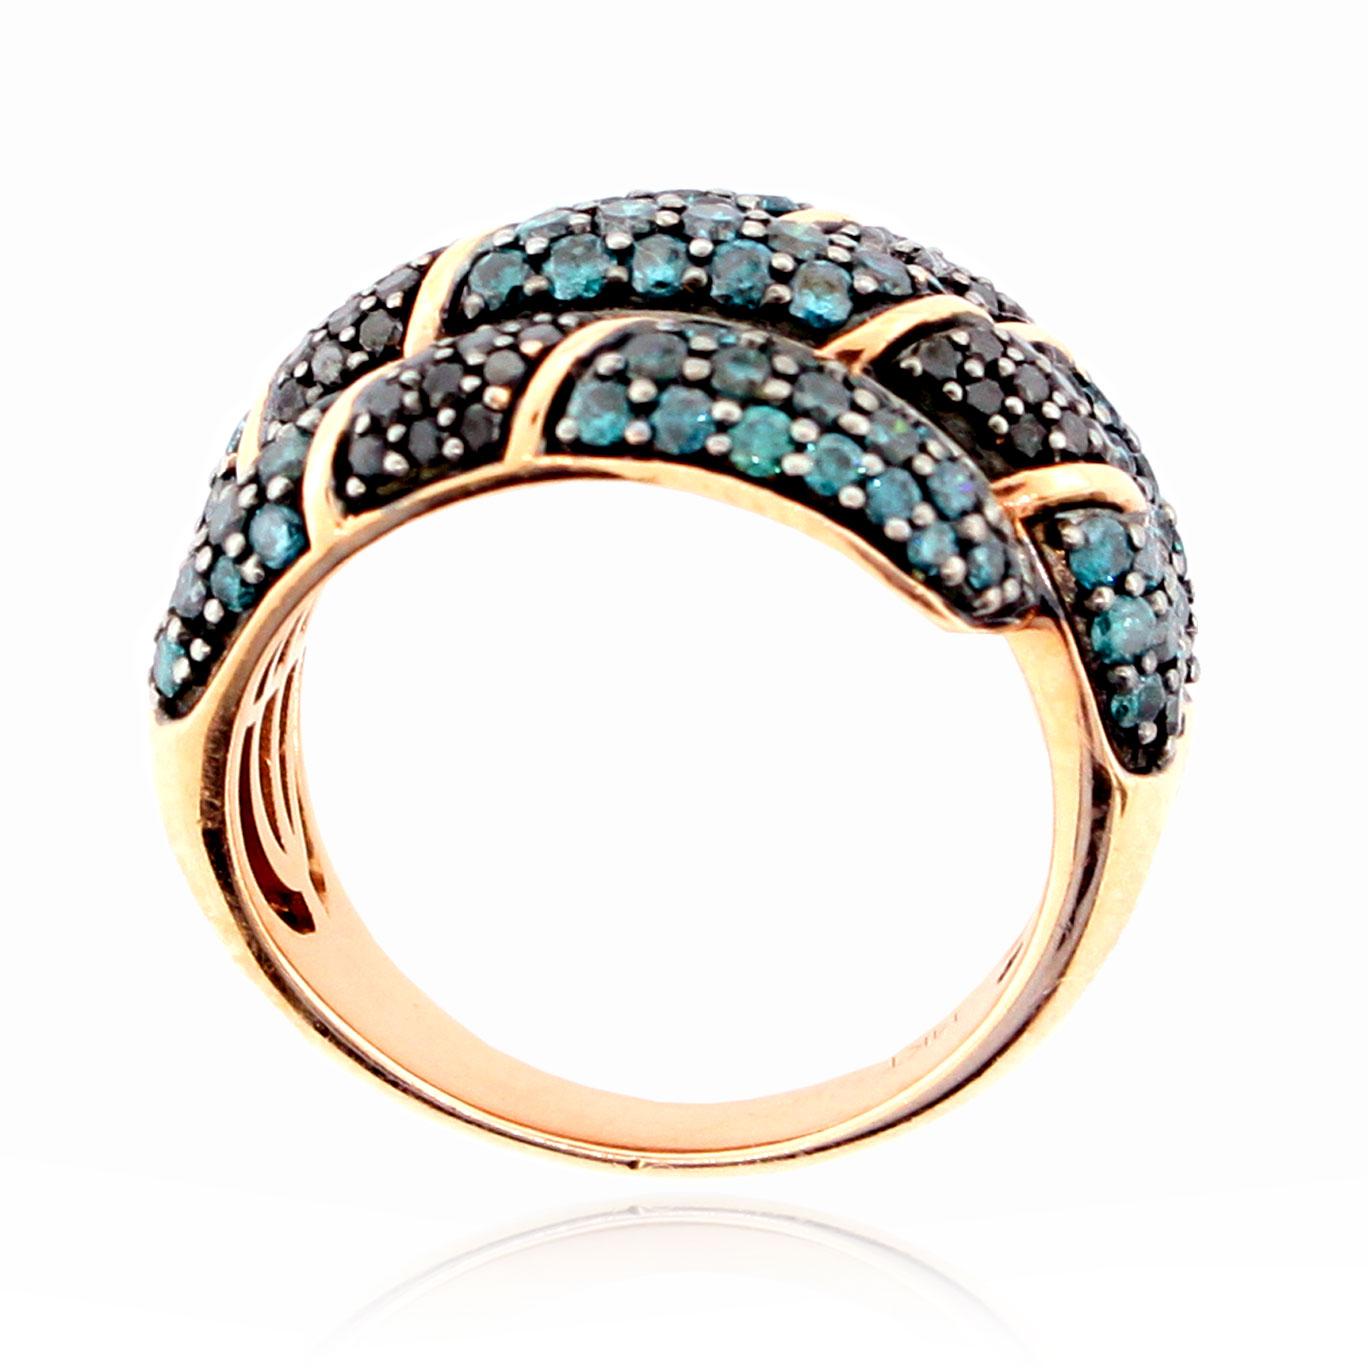 Cette bague spectaculaire de la collection Suzy Levian Limited Edition présente des diamants bleus et noirs pavés (2,05 ct TDW) enroulés autour de votre doigt dans une monture en or rose 14k. Le motif croisé est à la fois délicat et audacieux car il